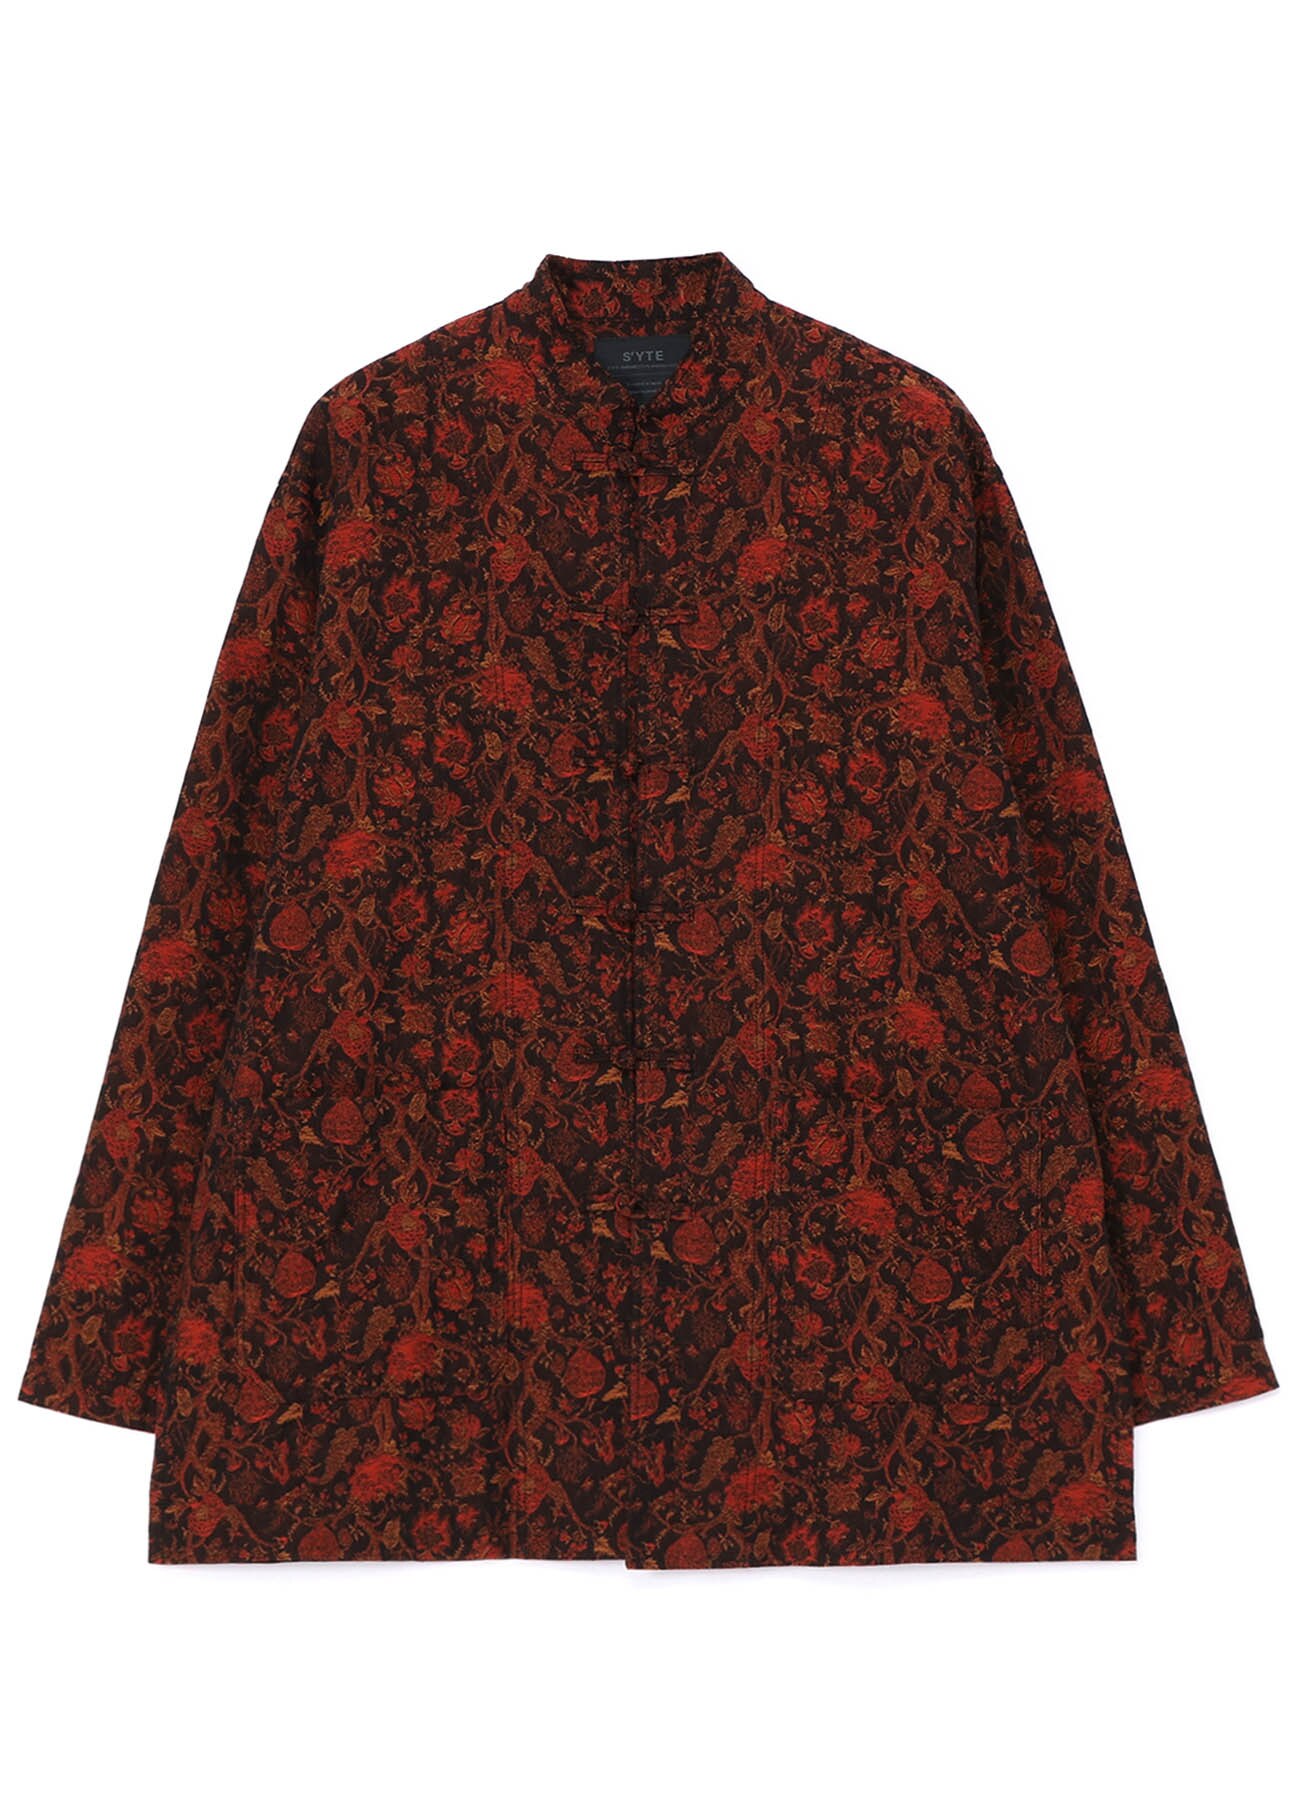 Cotton/Thorny Pattern Jacquard China Jacket